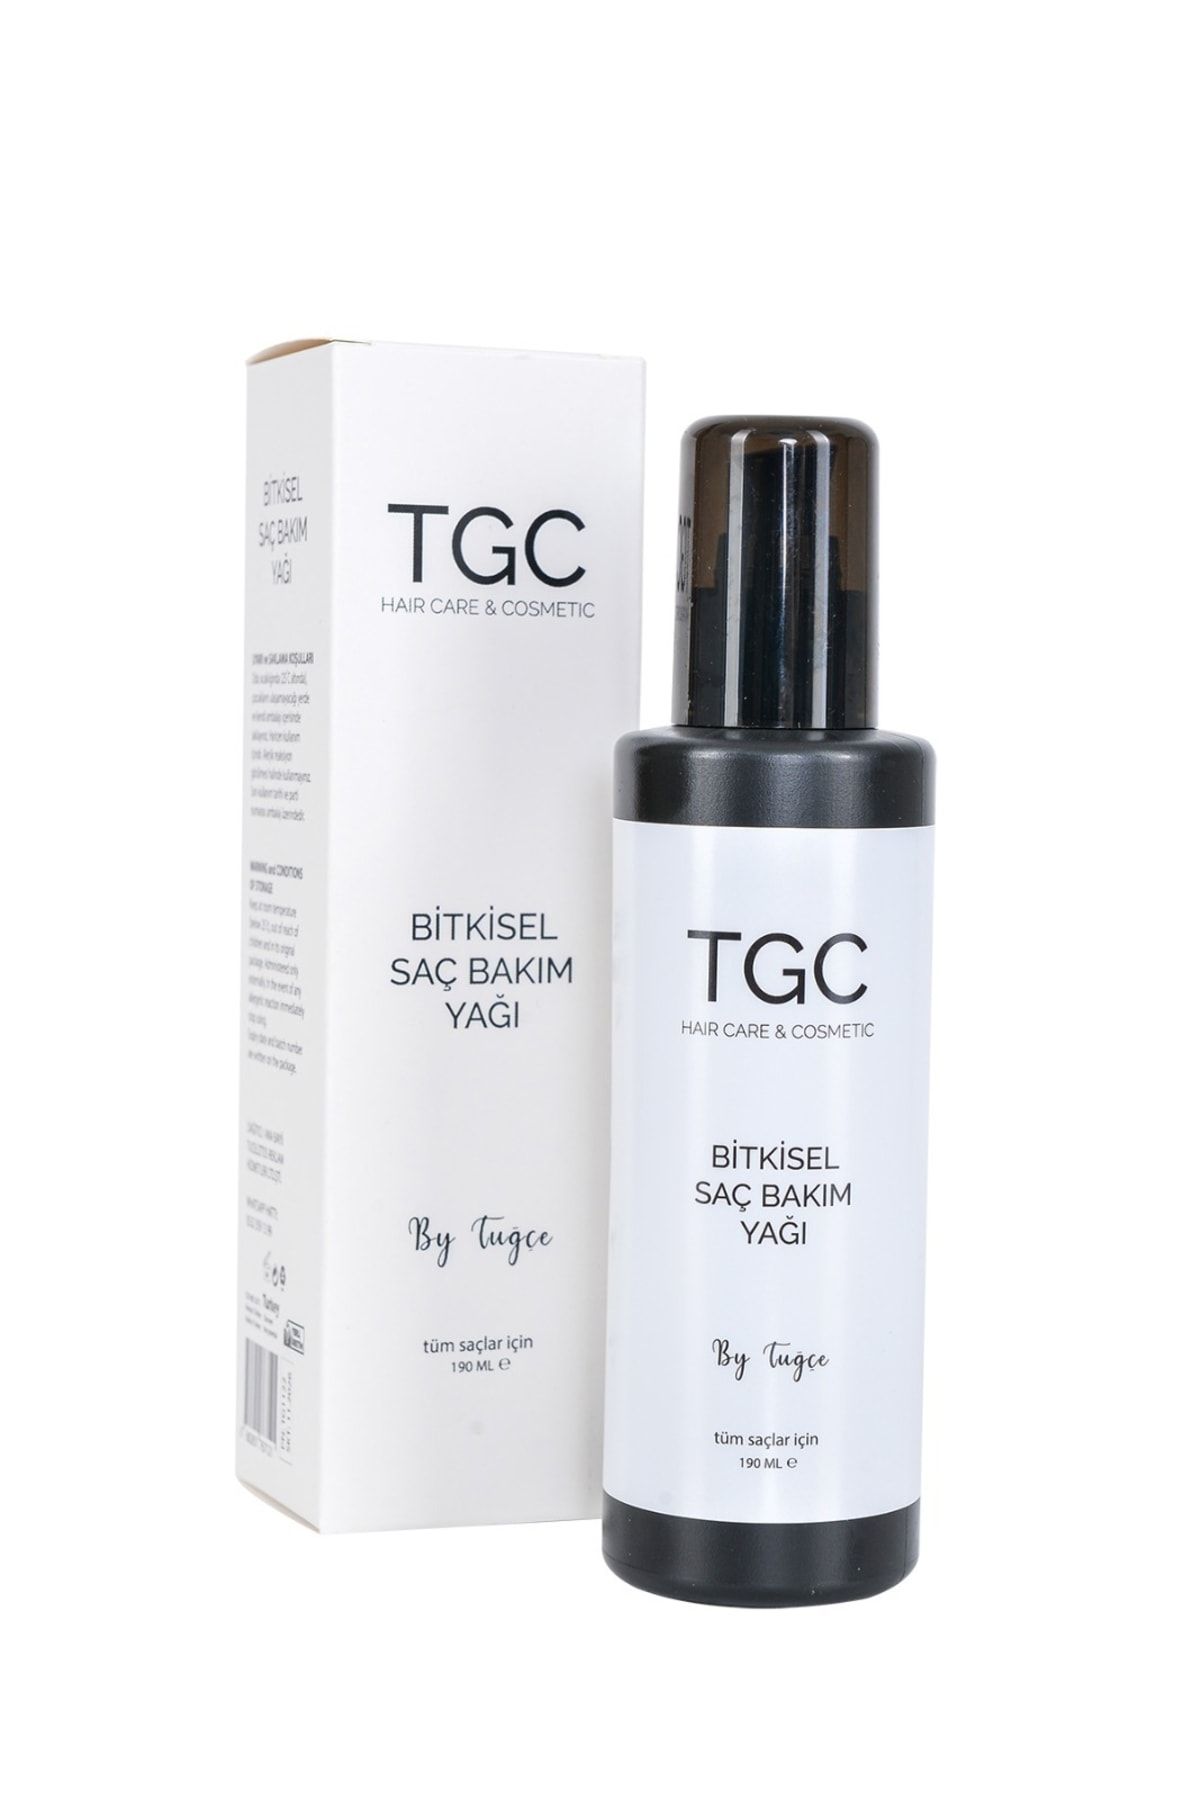 TGC Hair Care Cosmetic Tgc Bitkisel Saç Bakım Yağı 190 ml